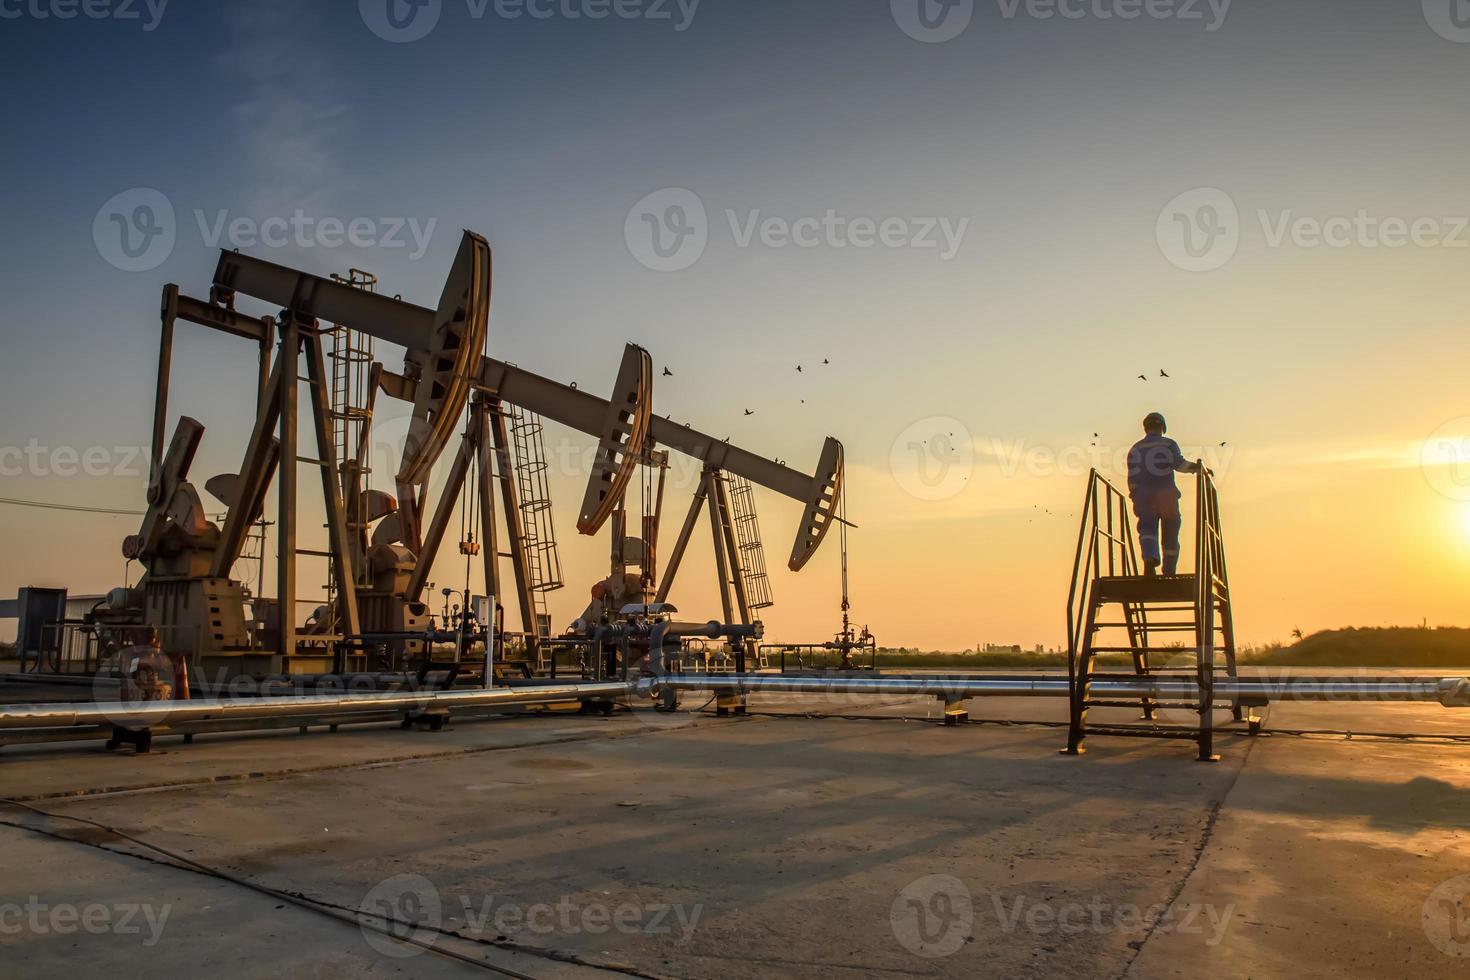 silueta de trabajadores petroleros que trabajan en plataformas petrolíferas o campos petroleros y gasolineras por la noche con una hermosa puesta de sol. foto